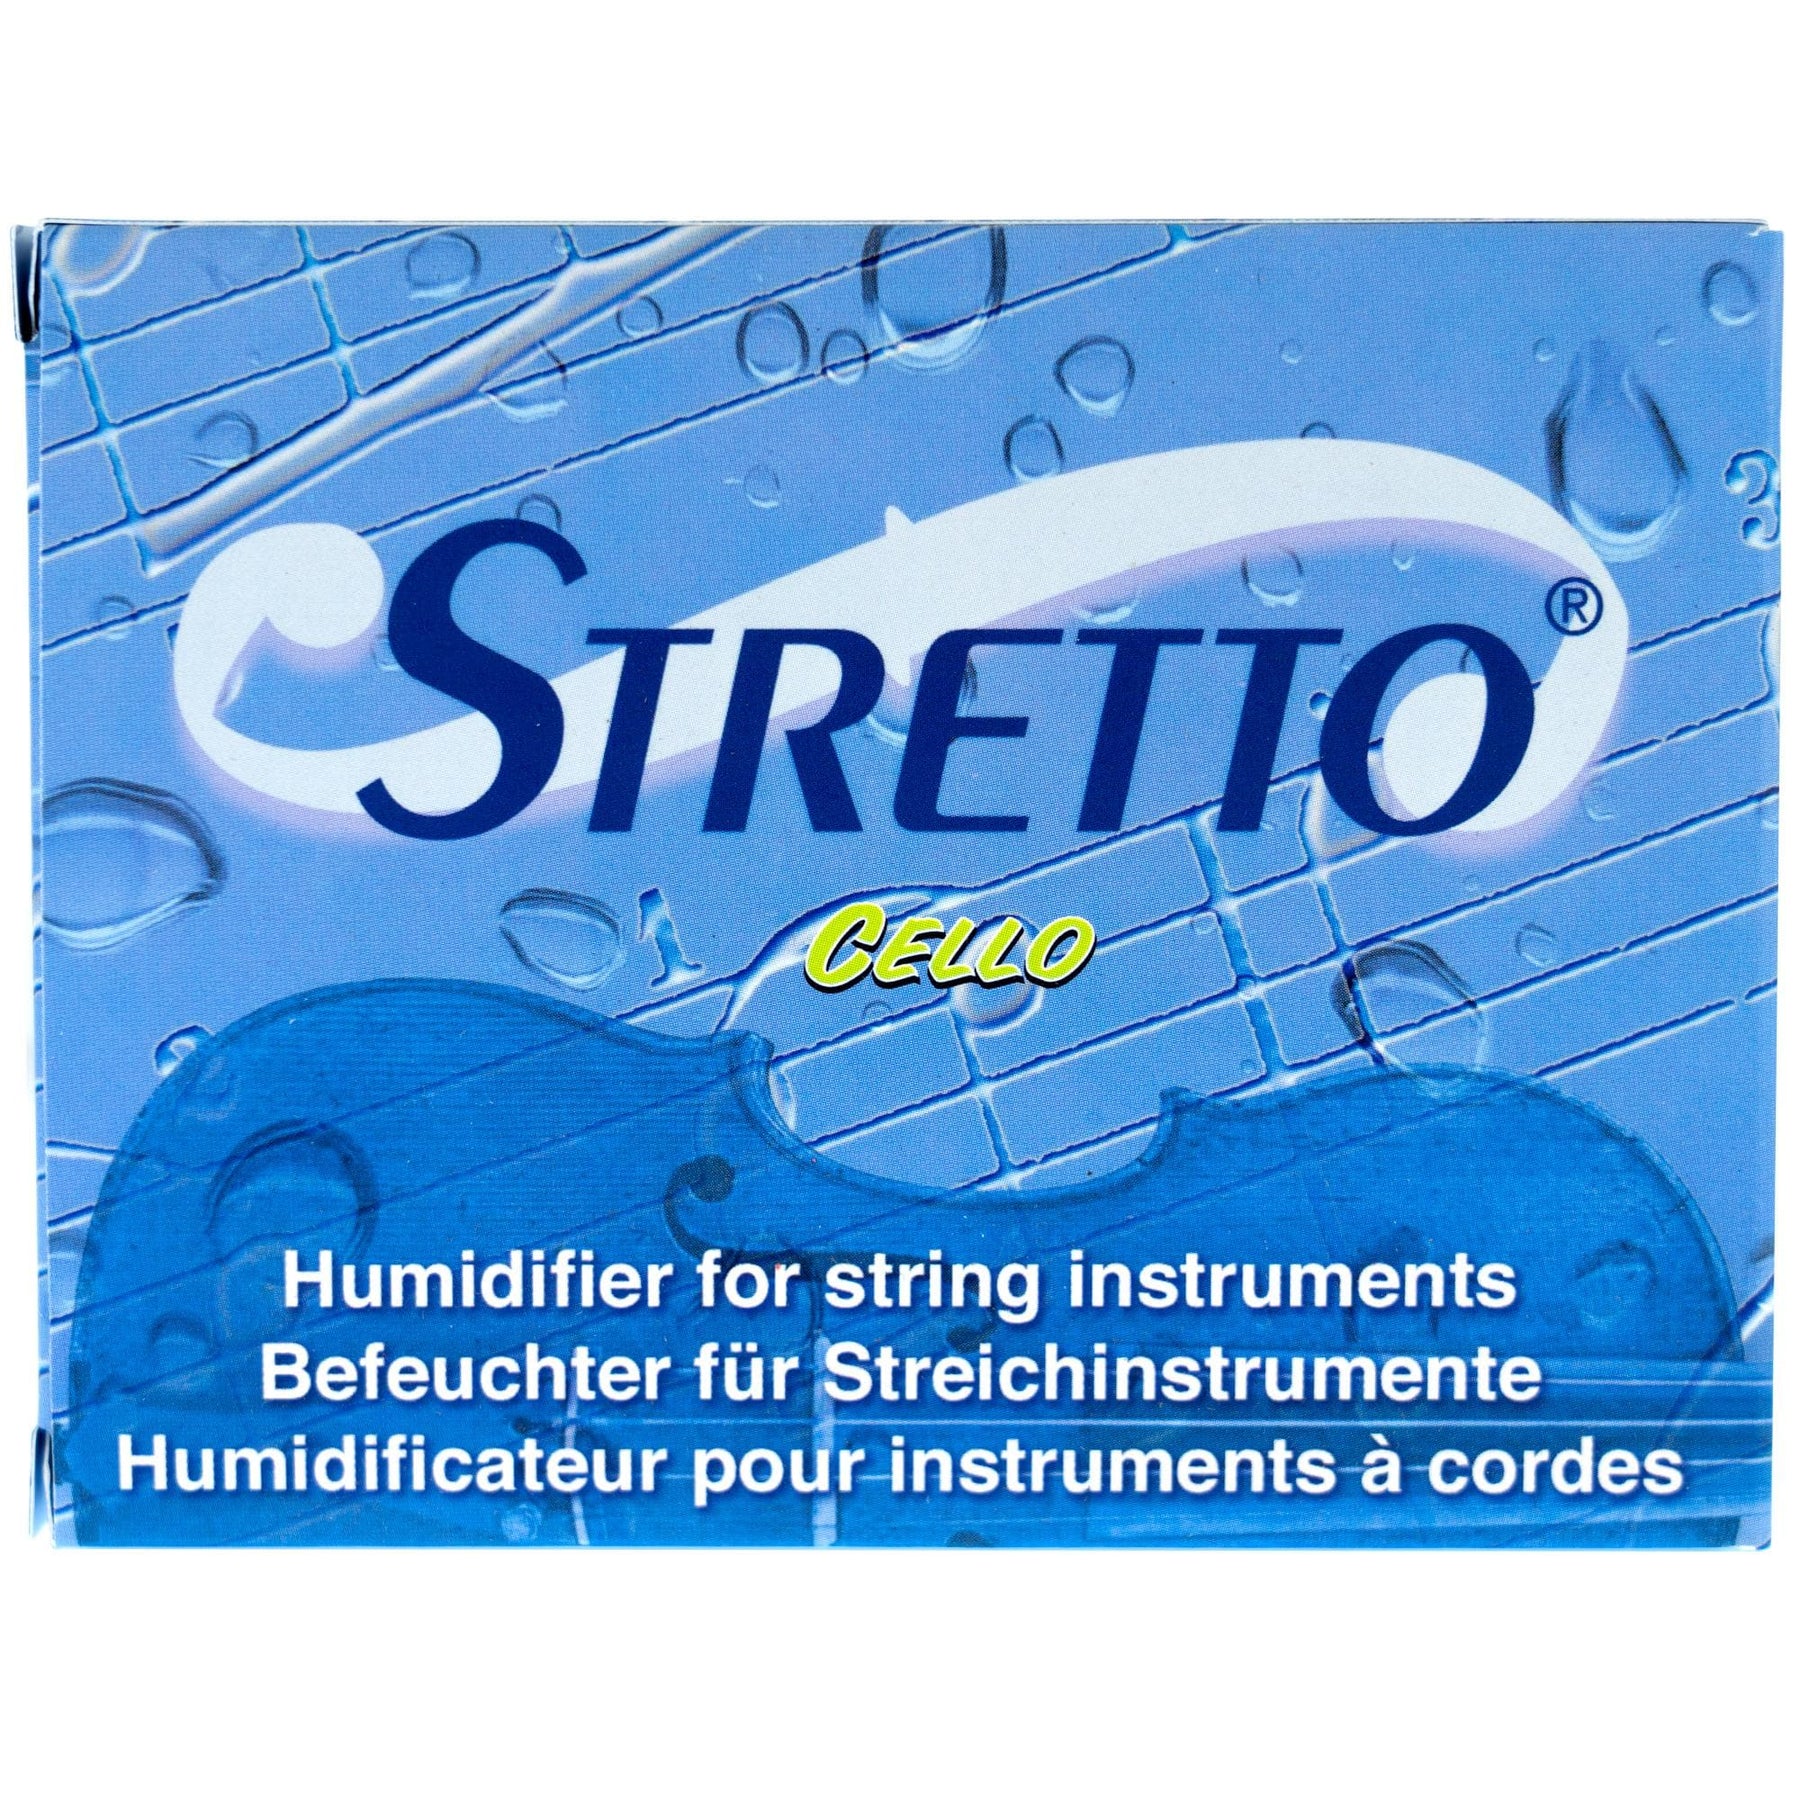 Stretto® Humidifier for Cello